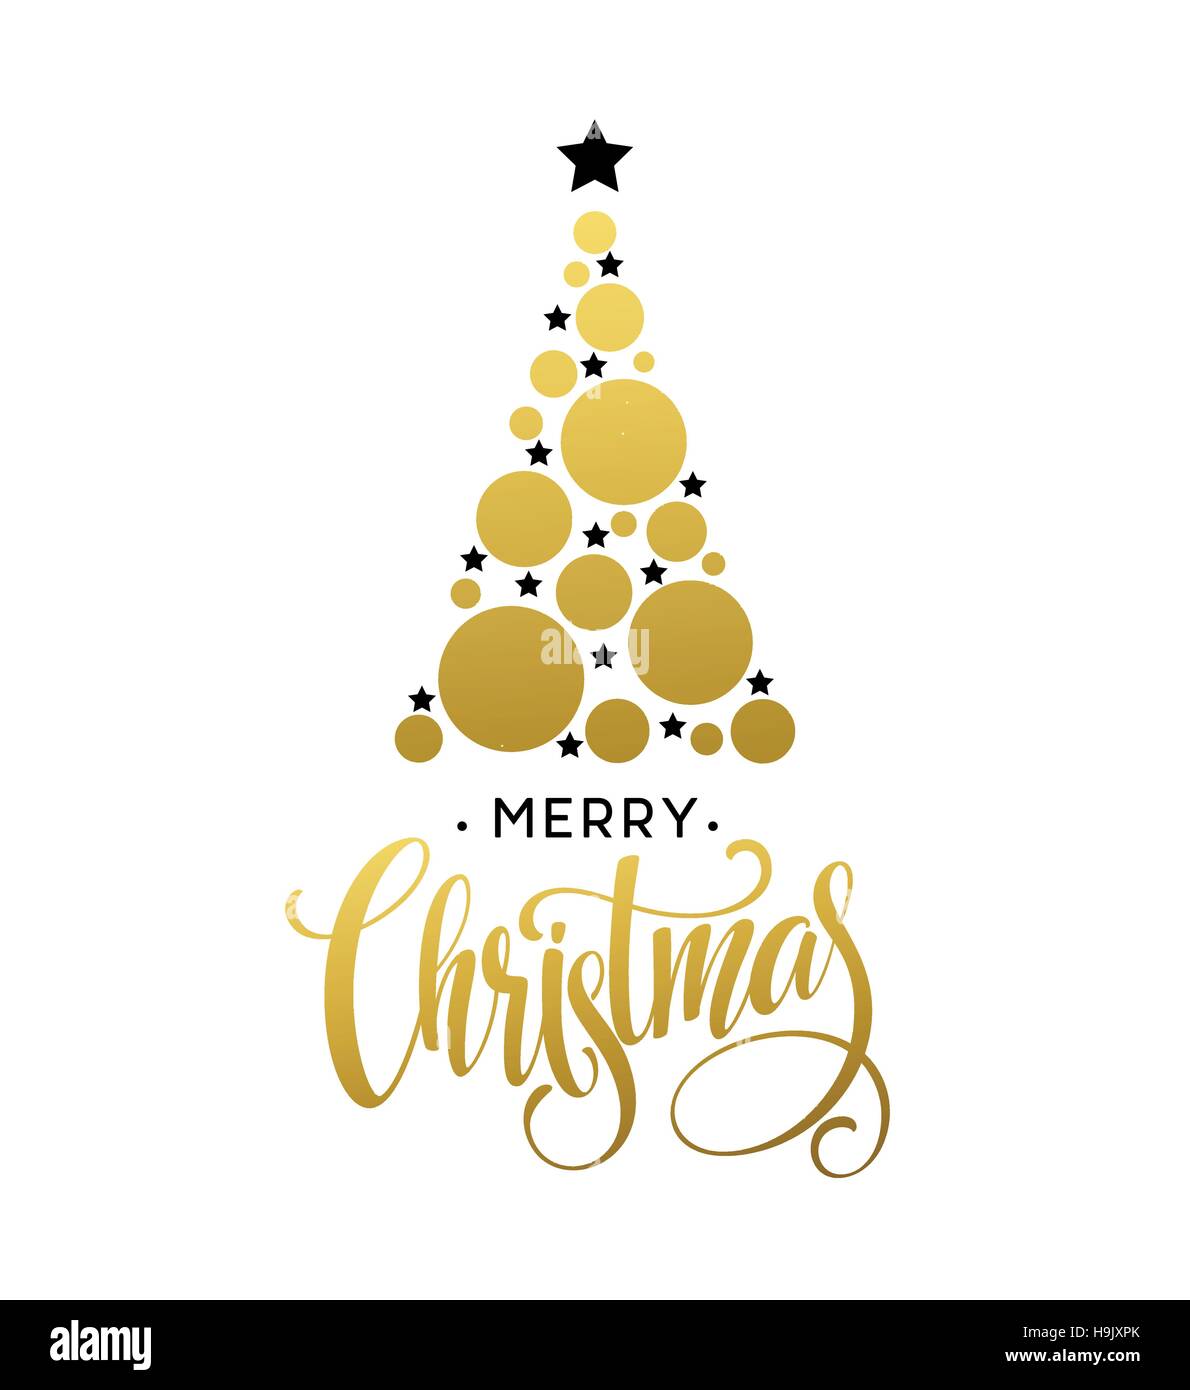 L'arbre de Noël d'or vecteur illustration réalisée avec cercle scintillant et star. Joyeux Noël EPS10 lettrage Illustration de Vecteur